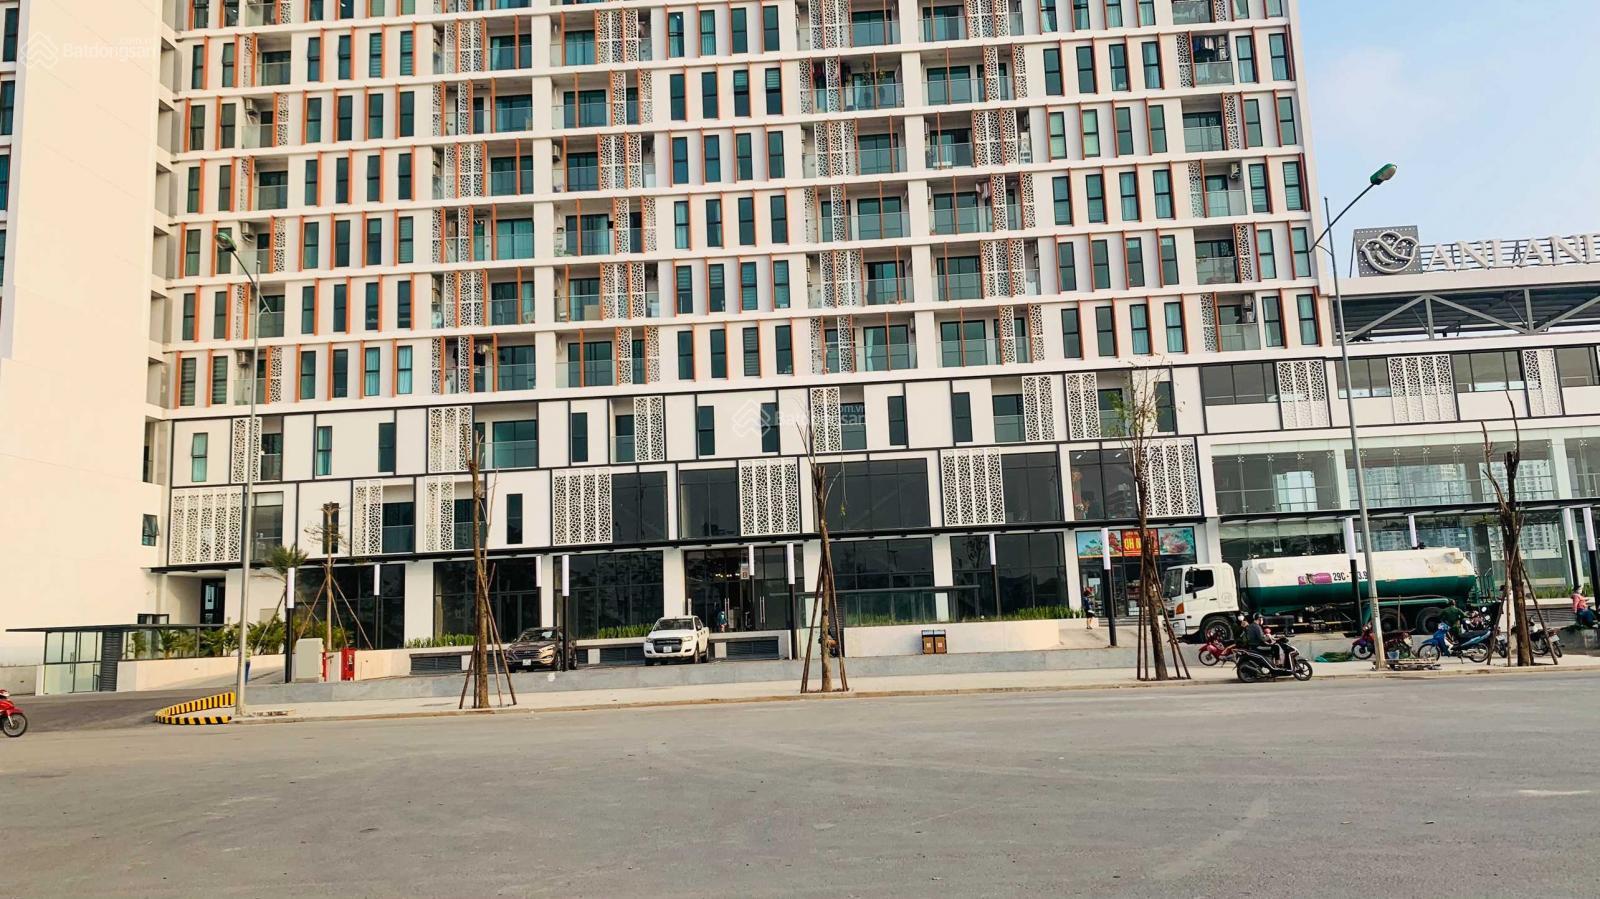 Duy nhất 2 căn shophose tầng đế chung cư Anland LakeView nằm trục Lê Quang Đạo 40m, từ 65tr/m2